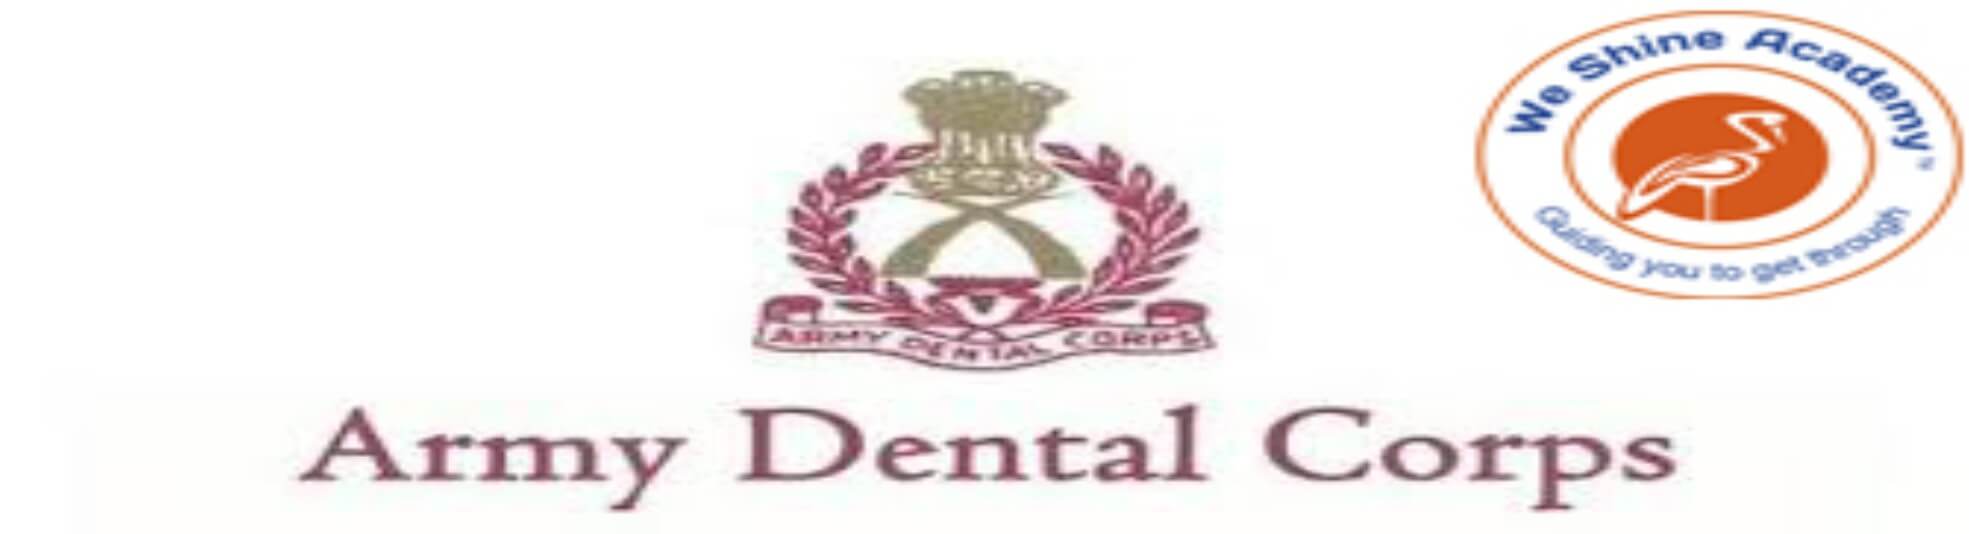 Share 80+ army dental corps logo - ceg.edu.vn